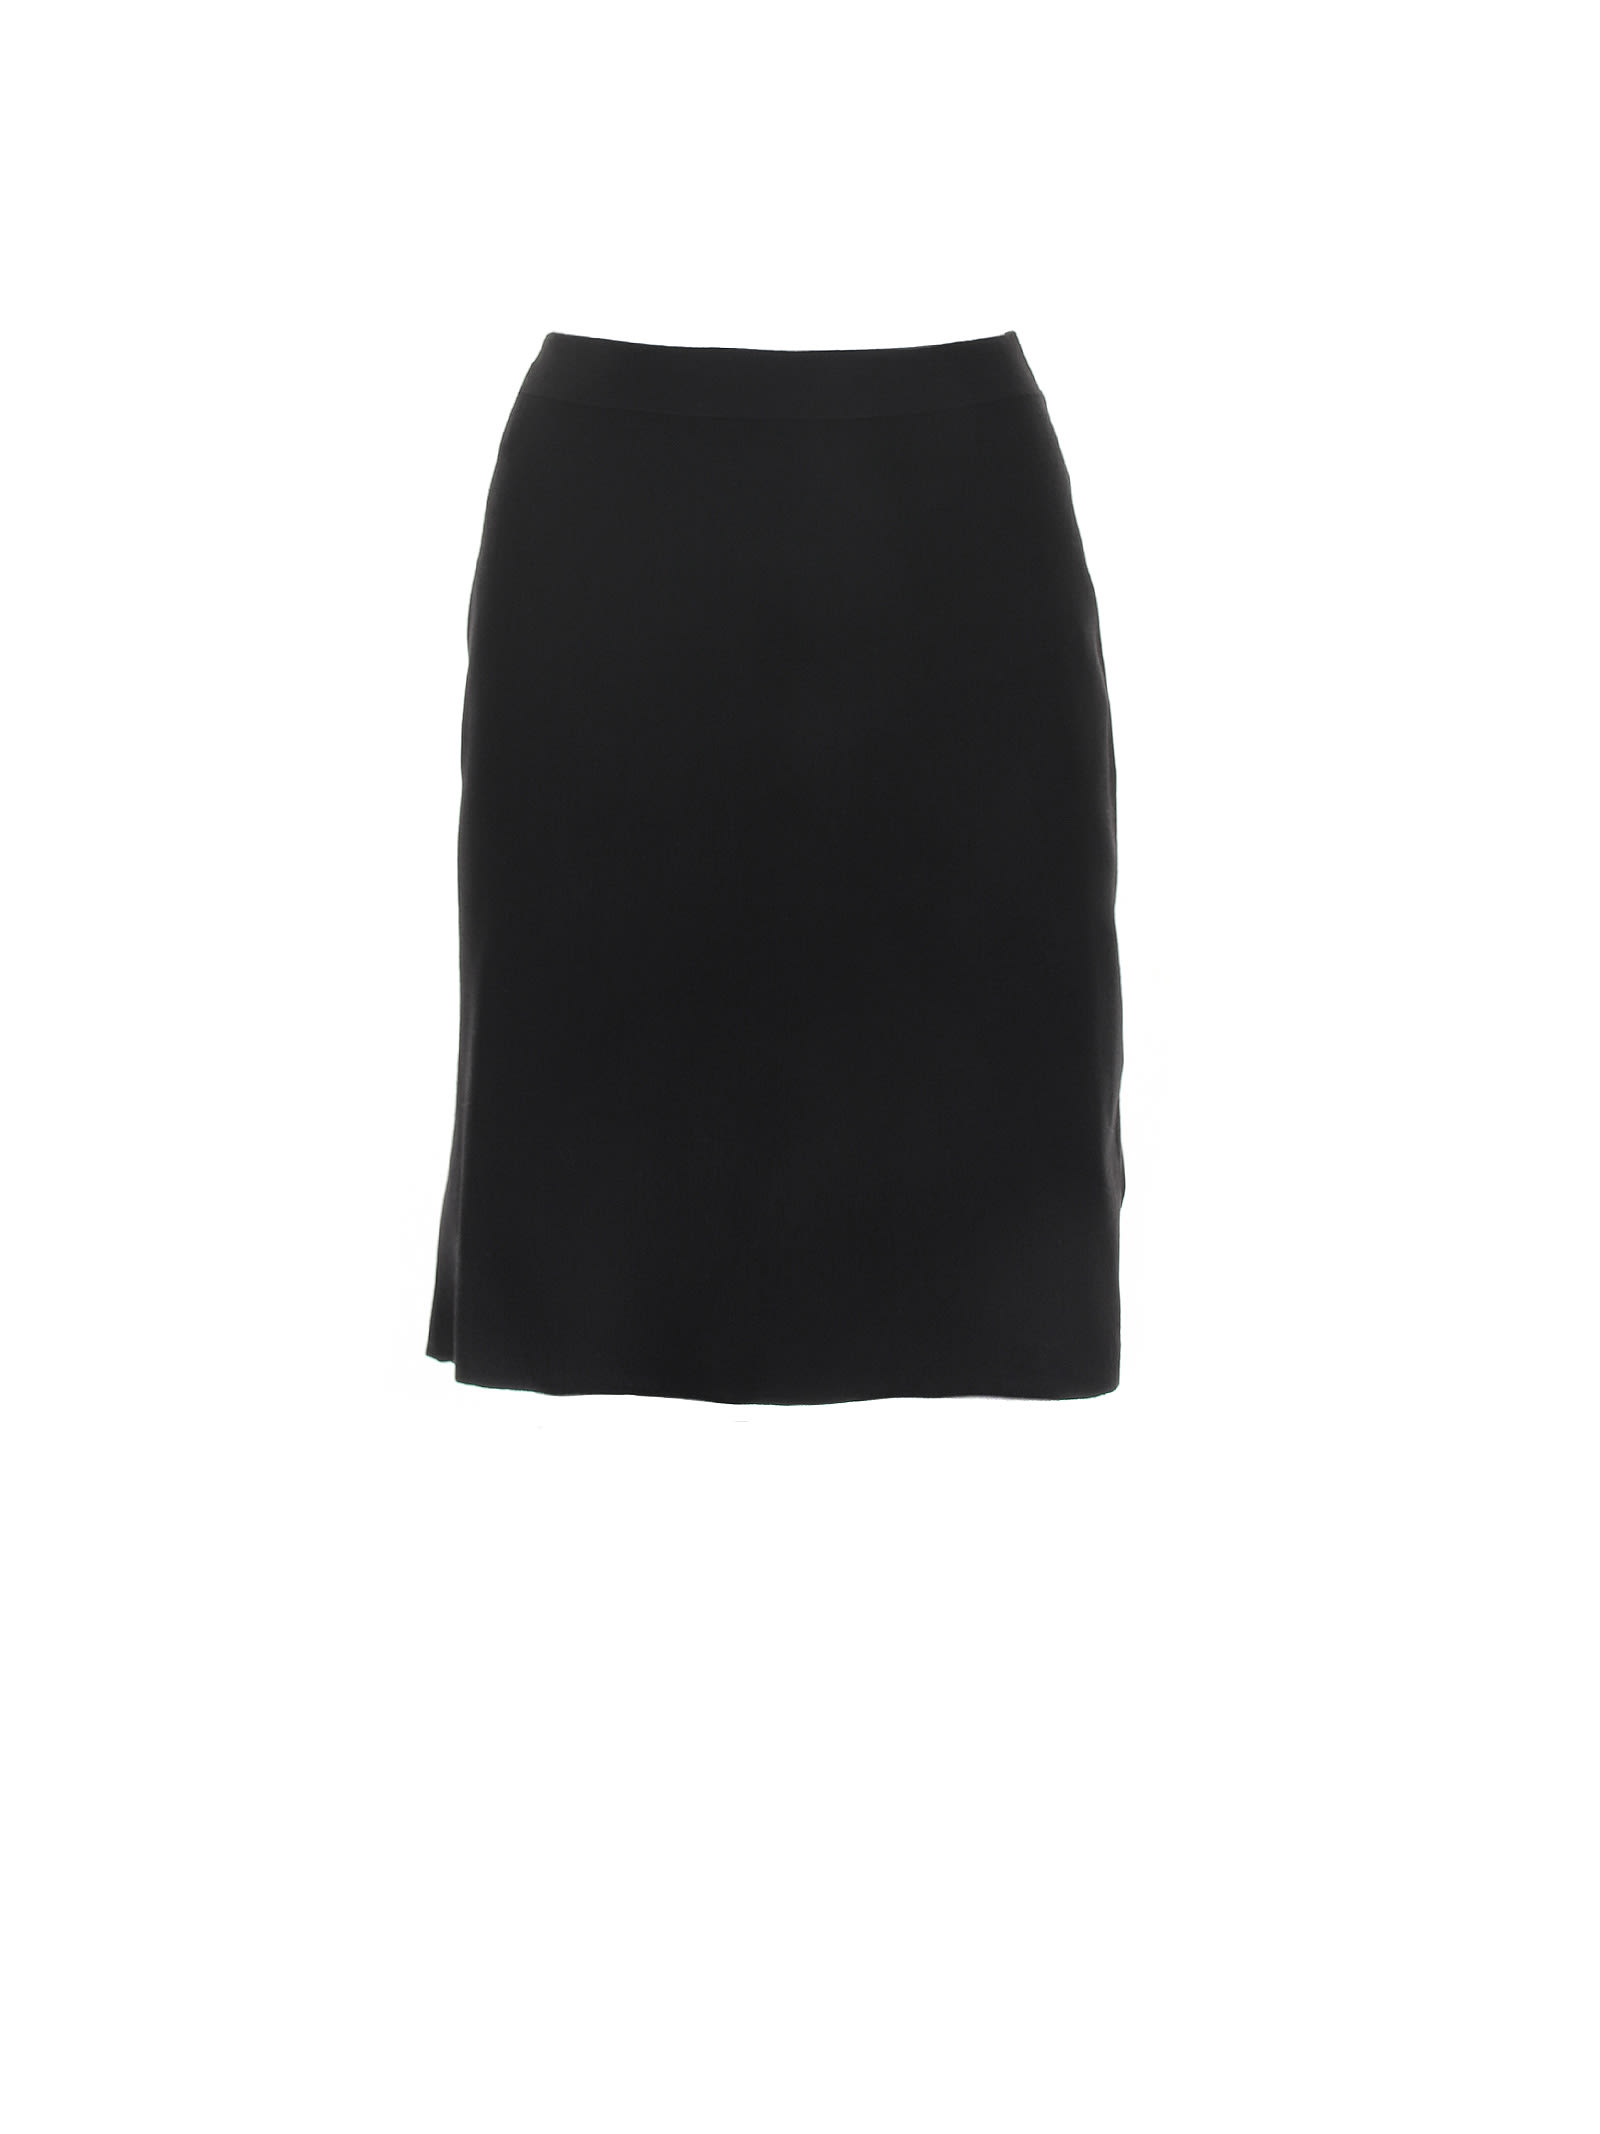 Bottega Veneta Black Short Skirt